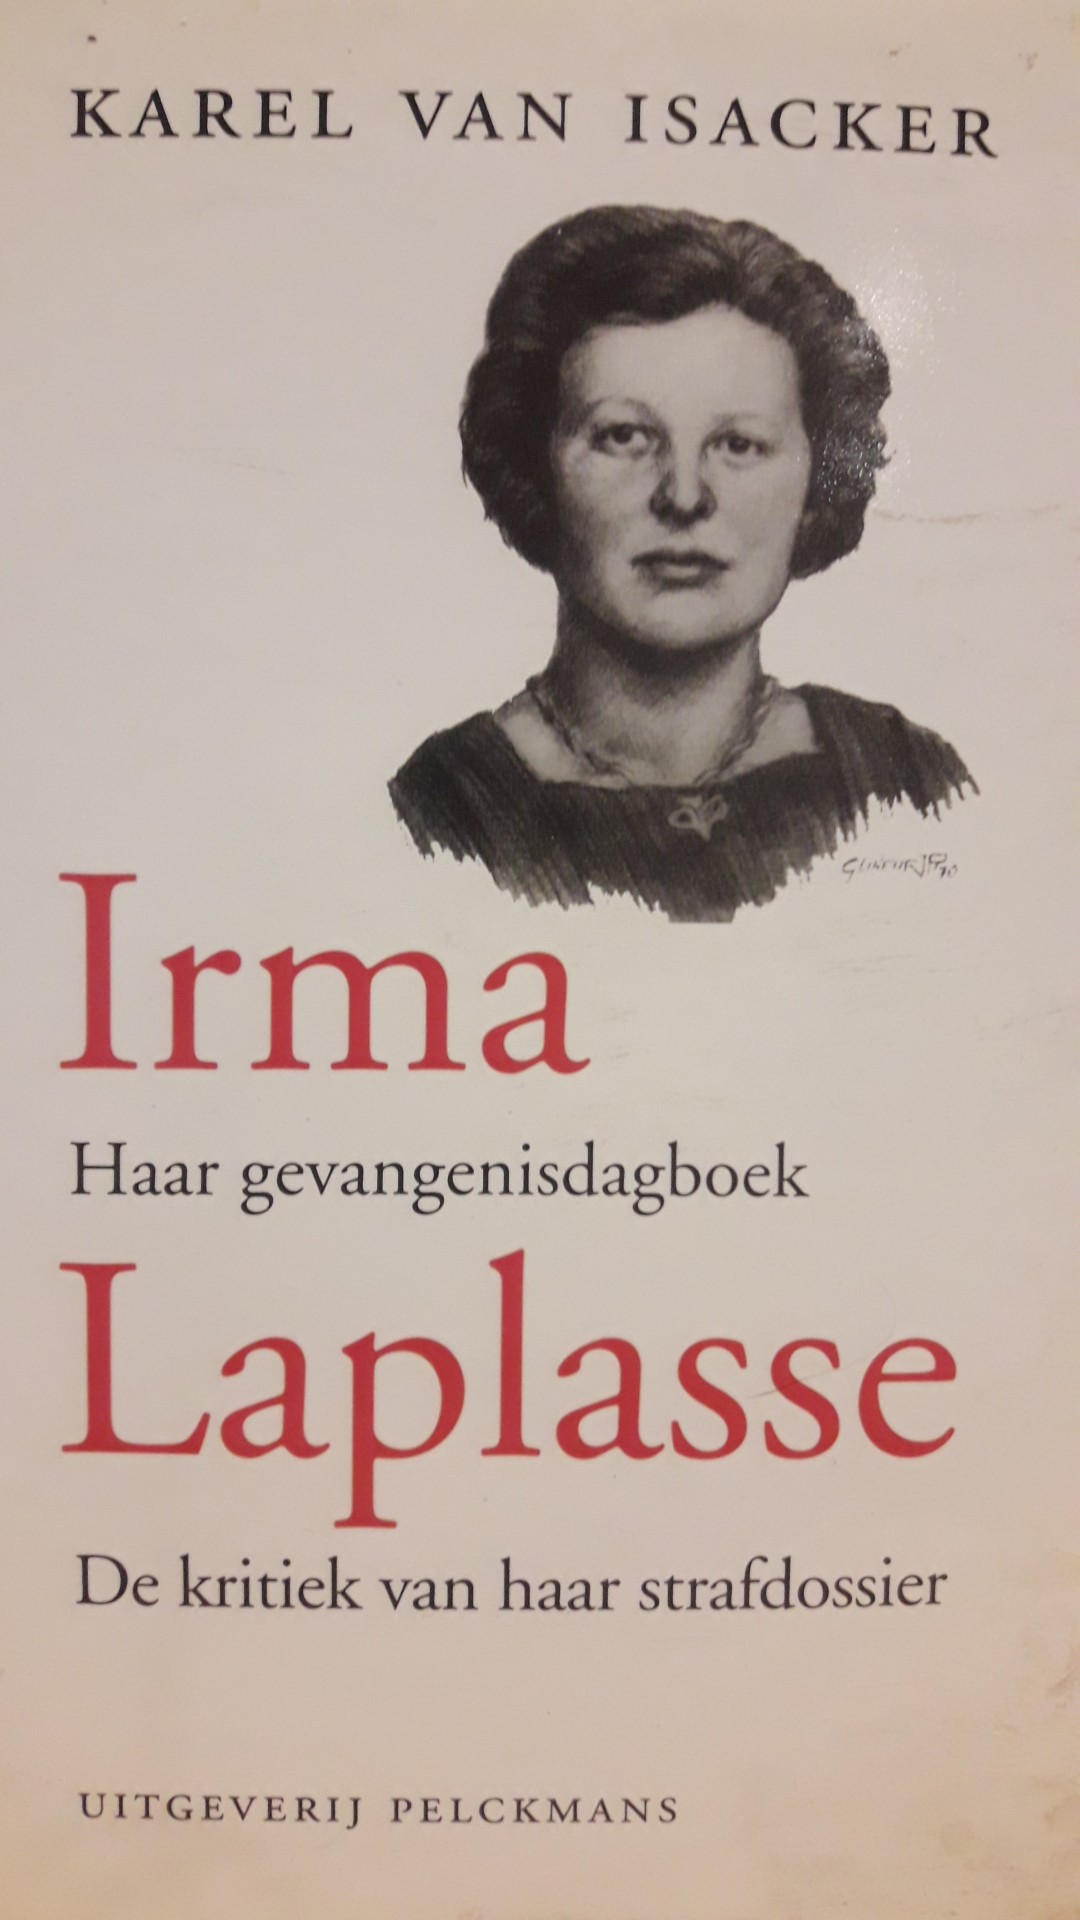 Boek Irma Laplasse - Gevangenisdagboek en strafdossier 1994 / 140 blz